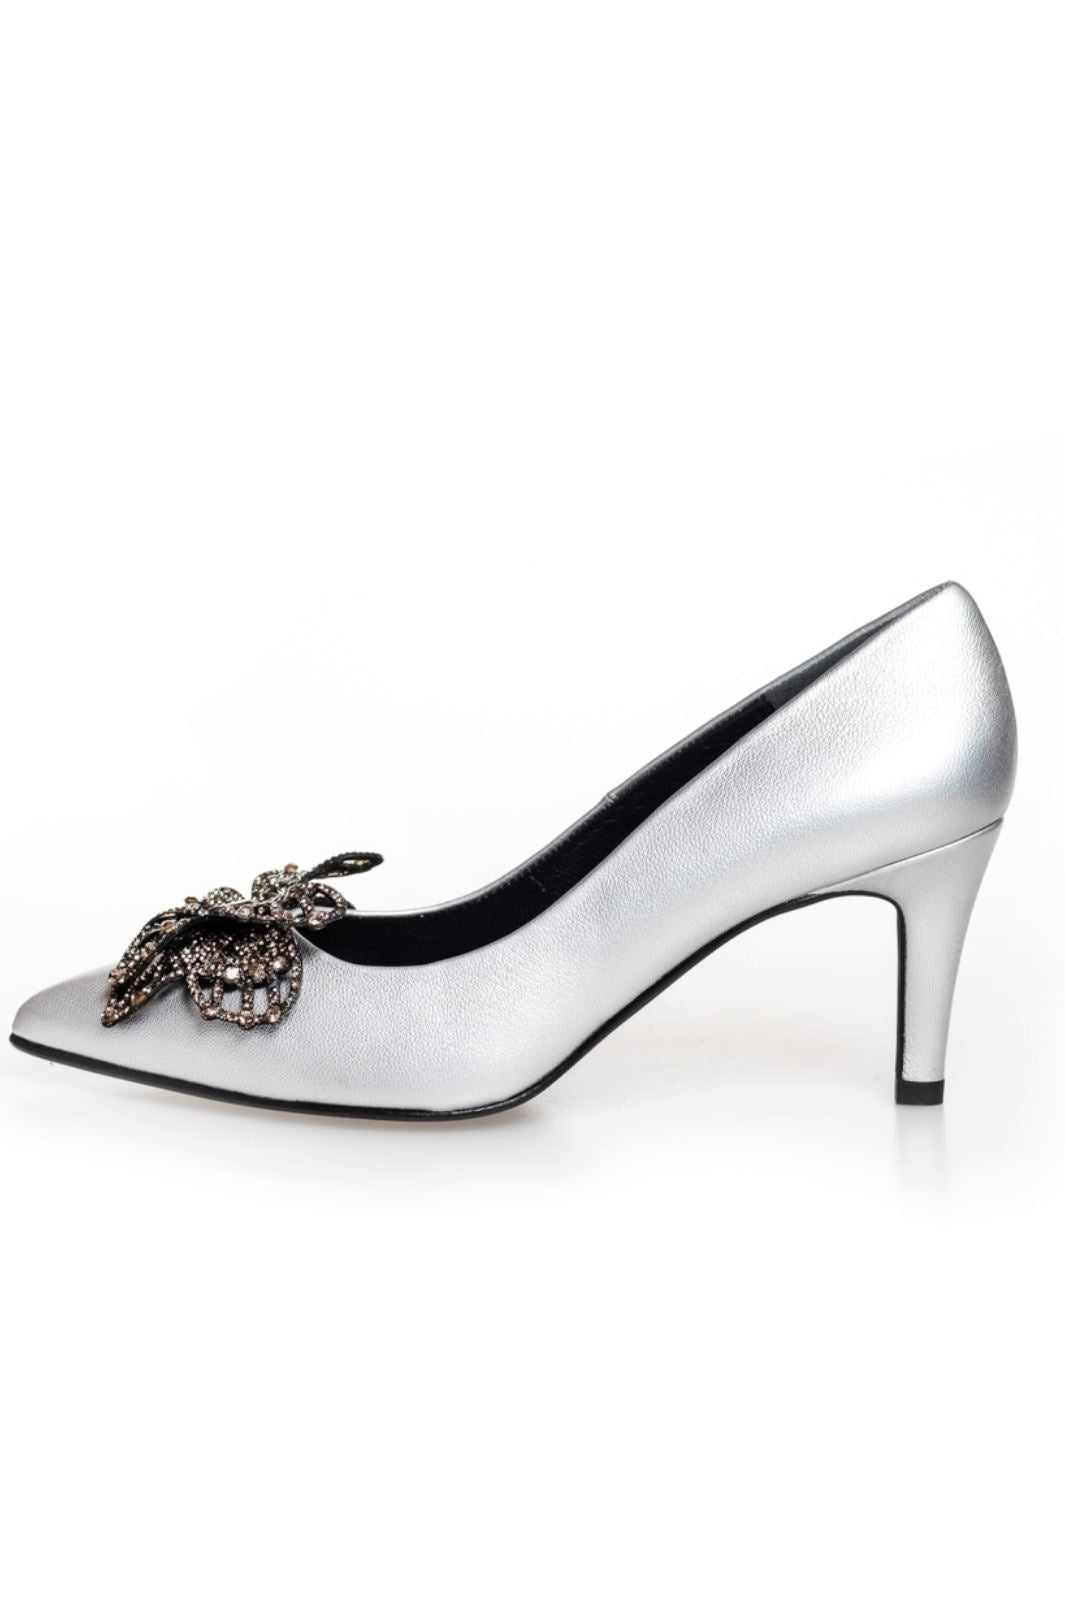 Copenhagen Shoes - Butterfly Silver - 0051 Silver (Argento) Stiletter 